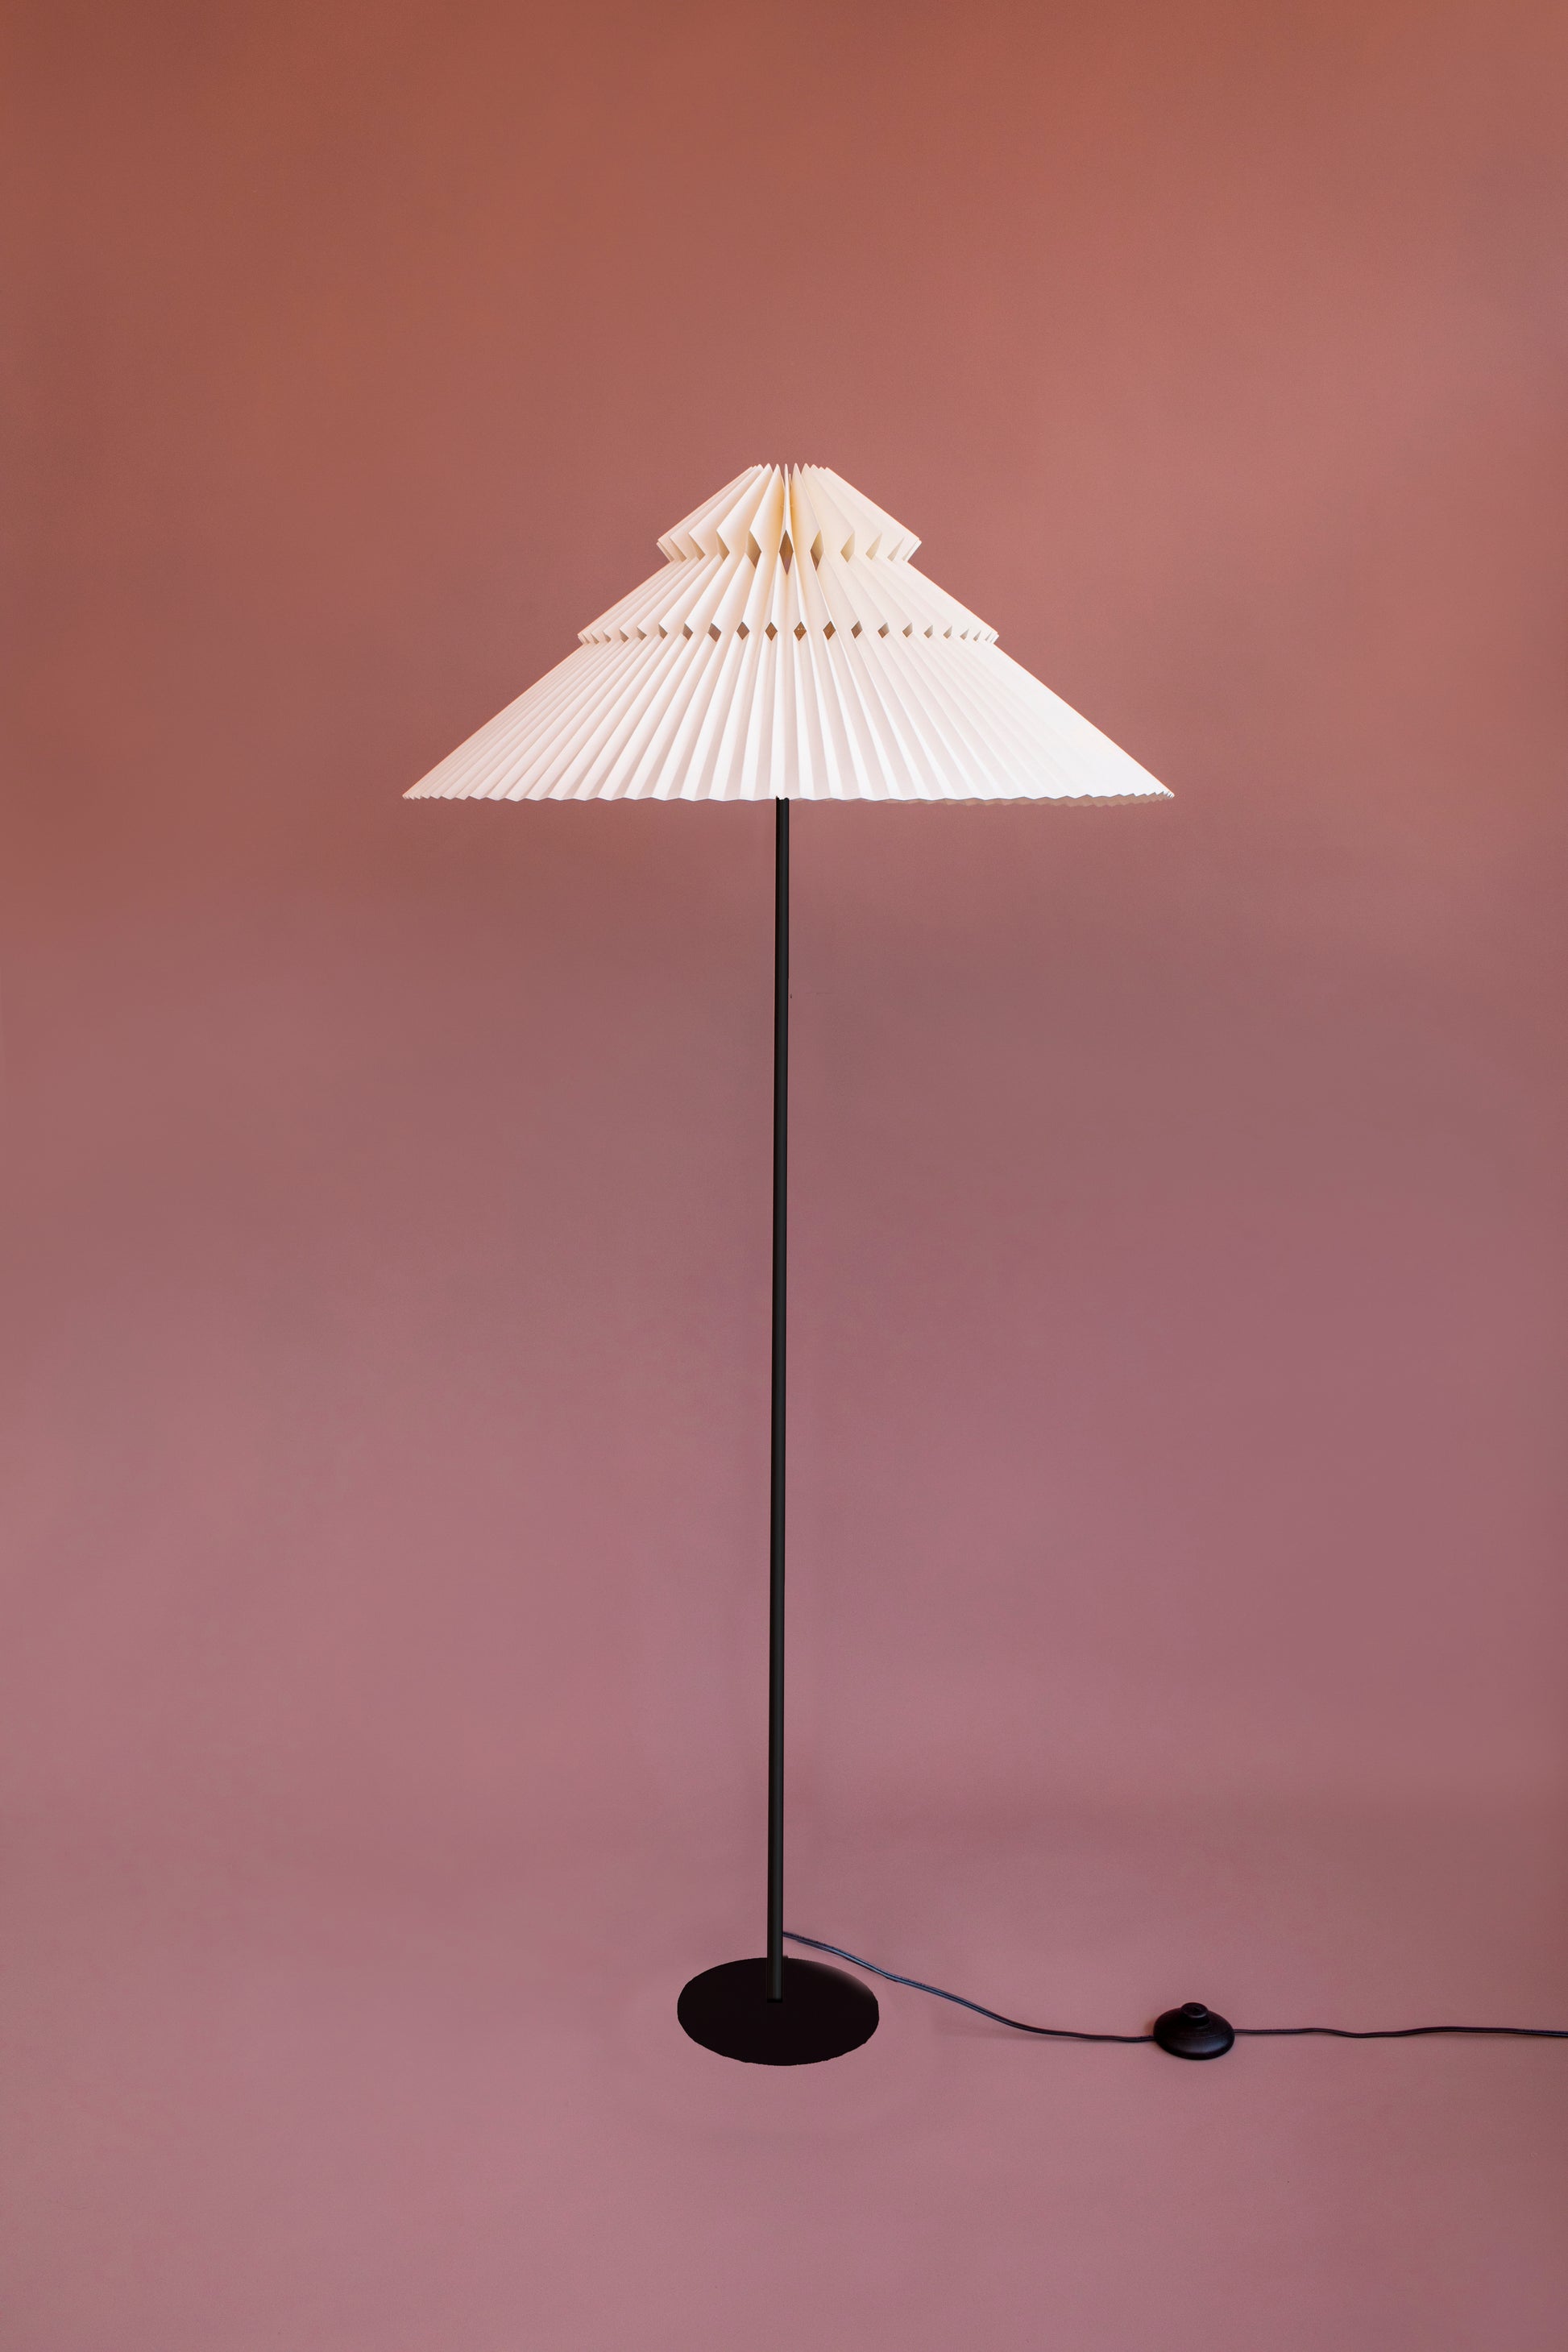 Lámpara de piso marca Plié referencia Andrómeda. Fabricada con base metálica y caperiza hecha en papel. Diseño colombiano hecho a mano.